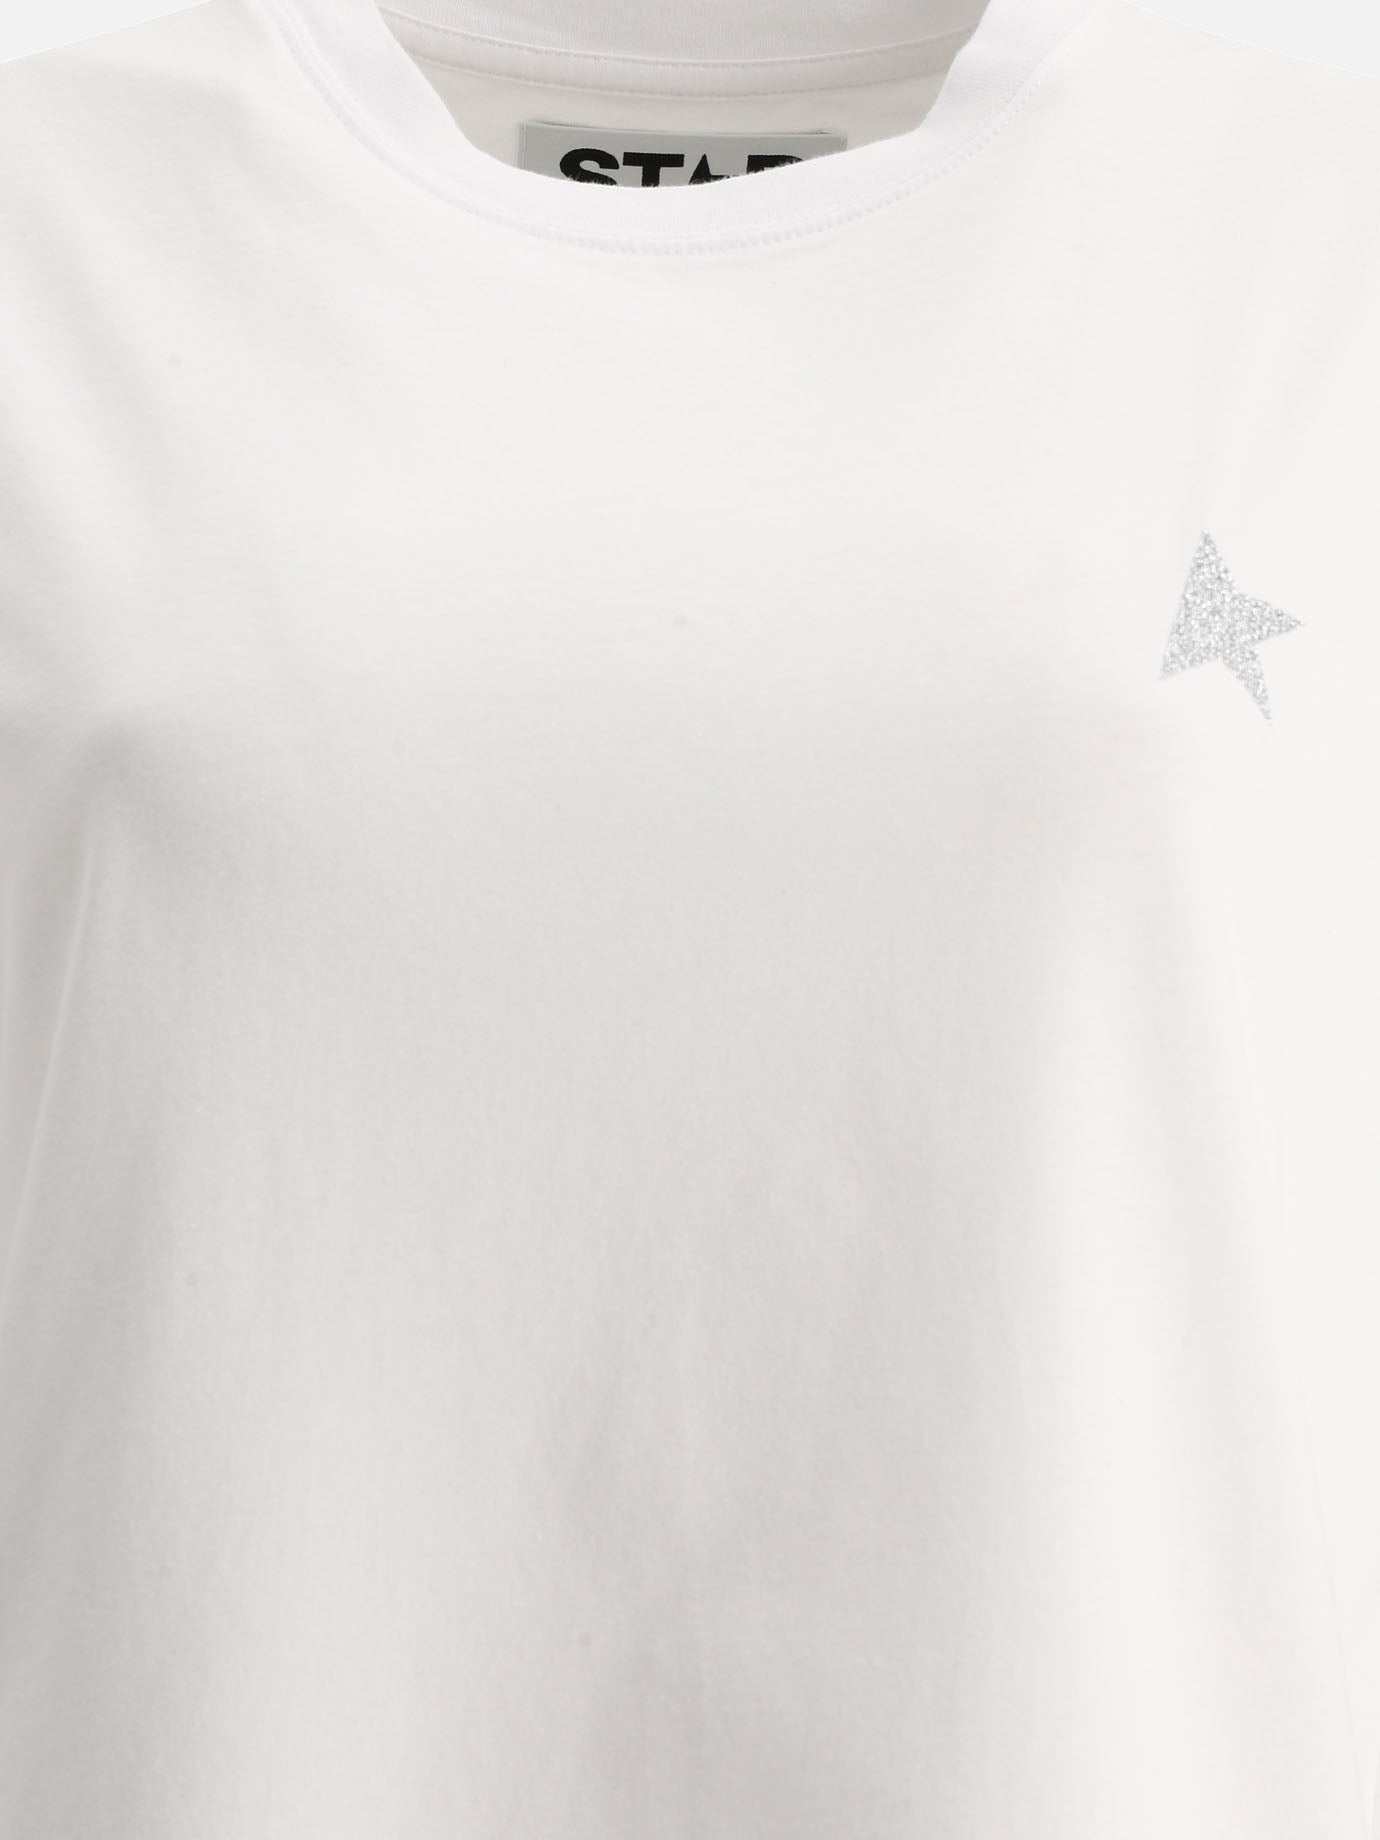 "Glittered Small Star" t-shirt